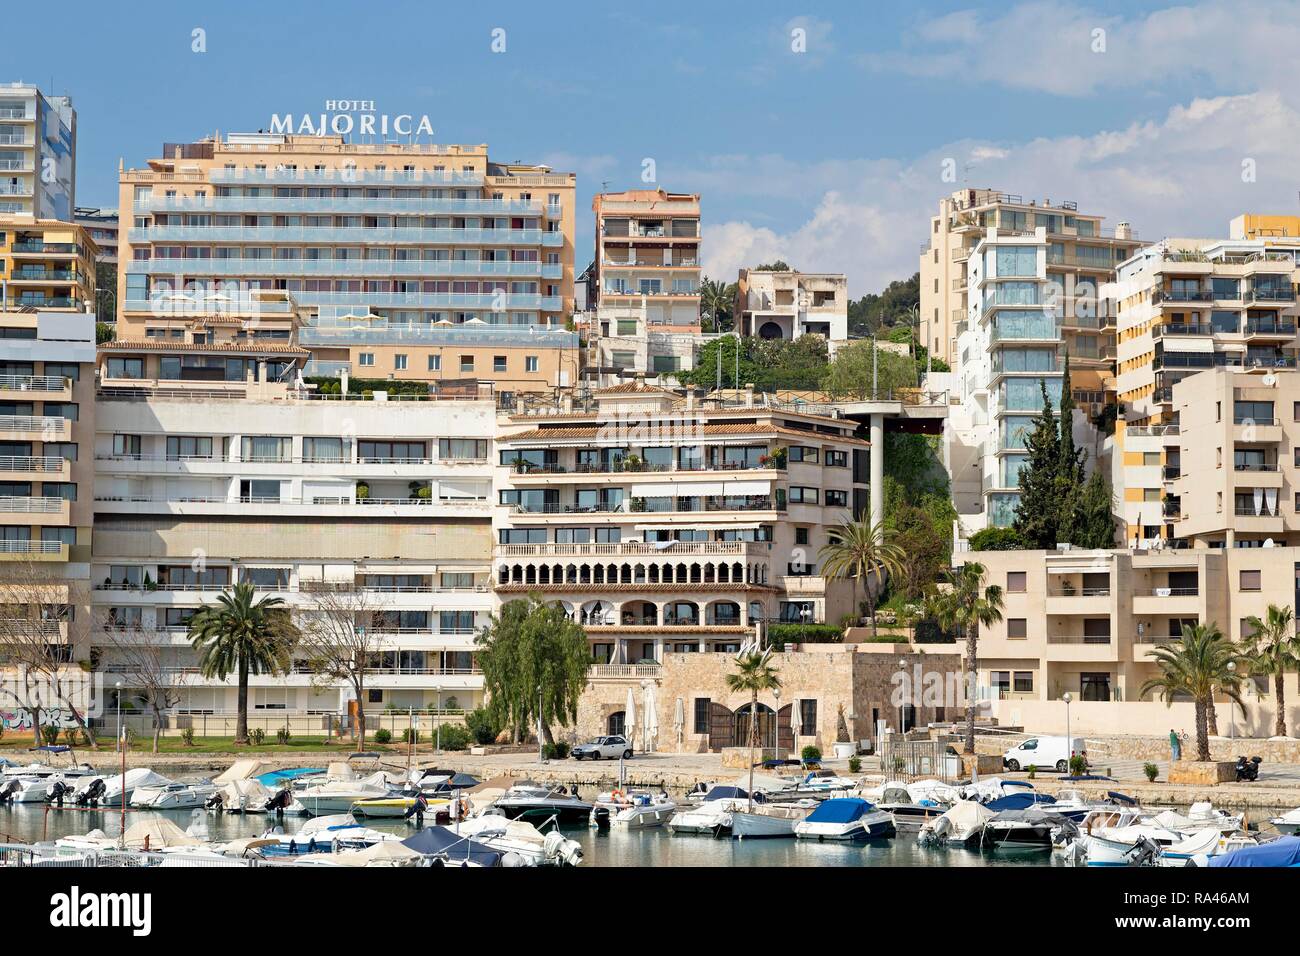 Apartment houses at marina, Palma de Majorca, Majorca, Spain Stock Photo